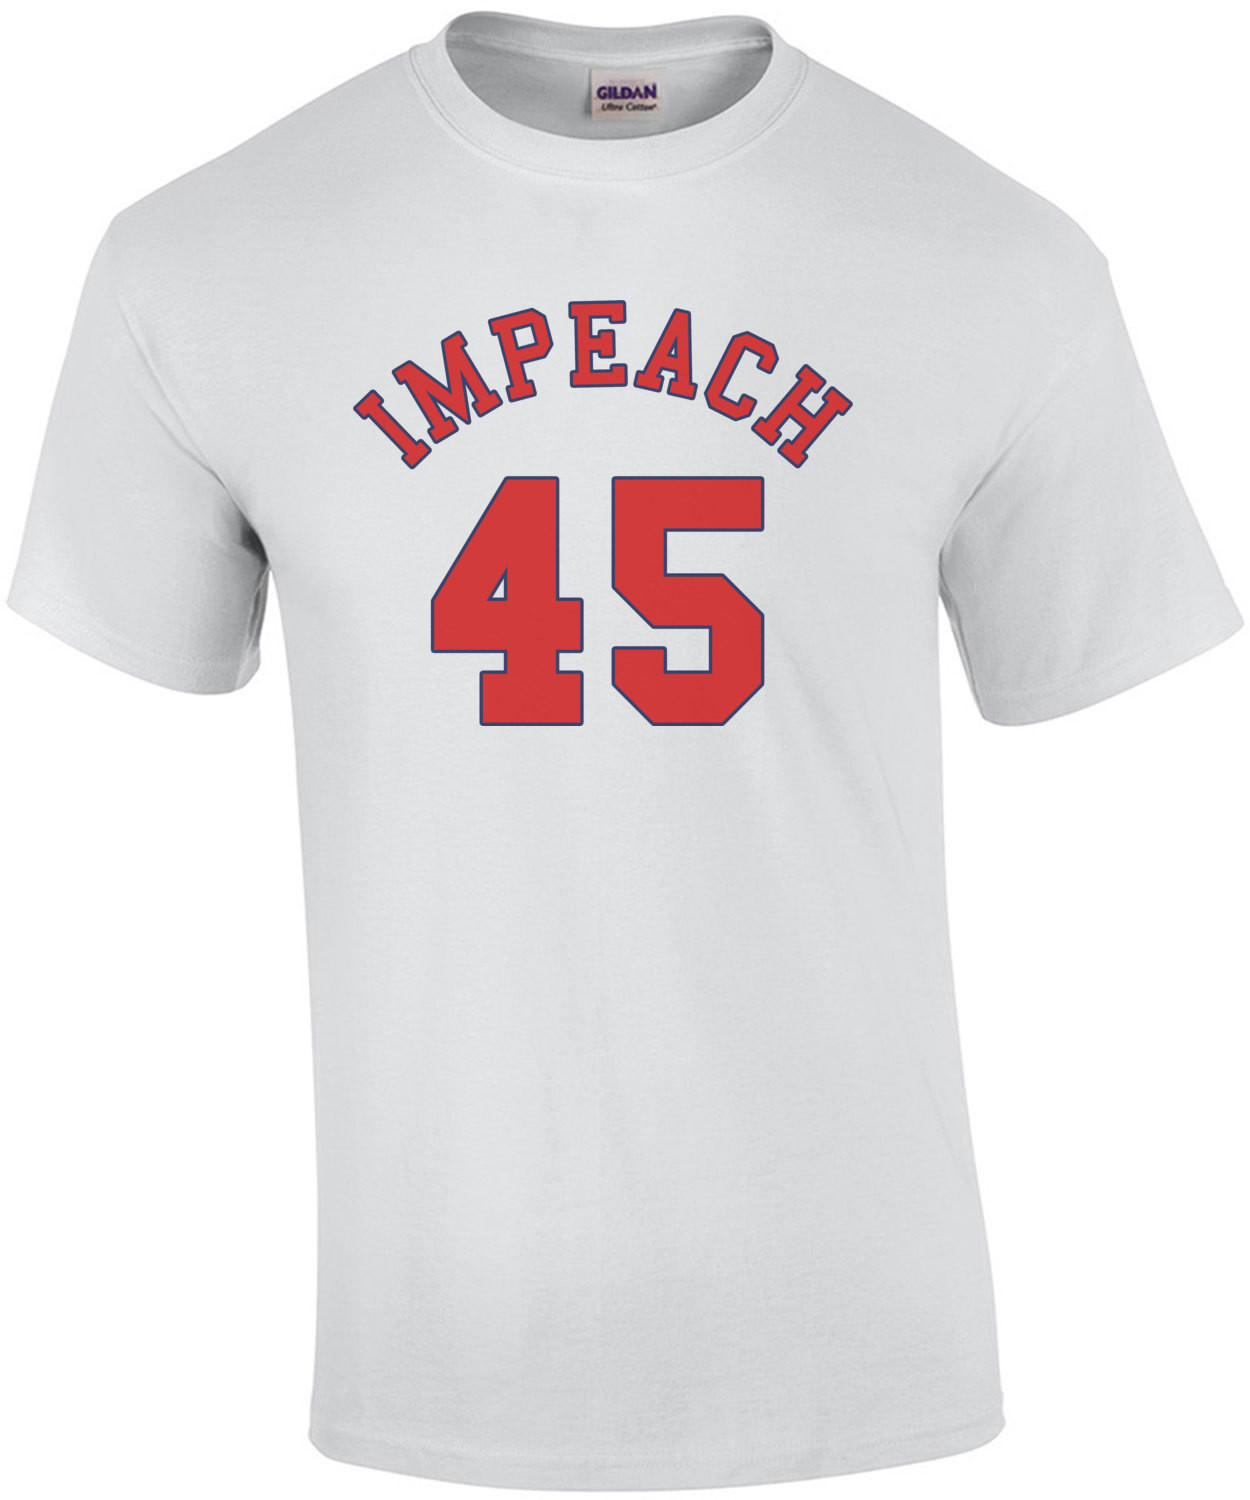 Impeach 45 (Donald Trump) Banned T-Shirt